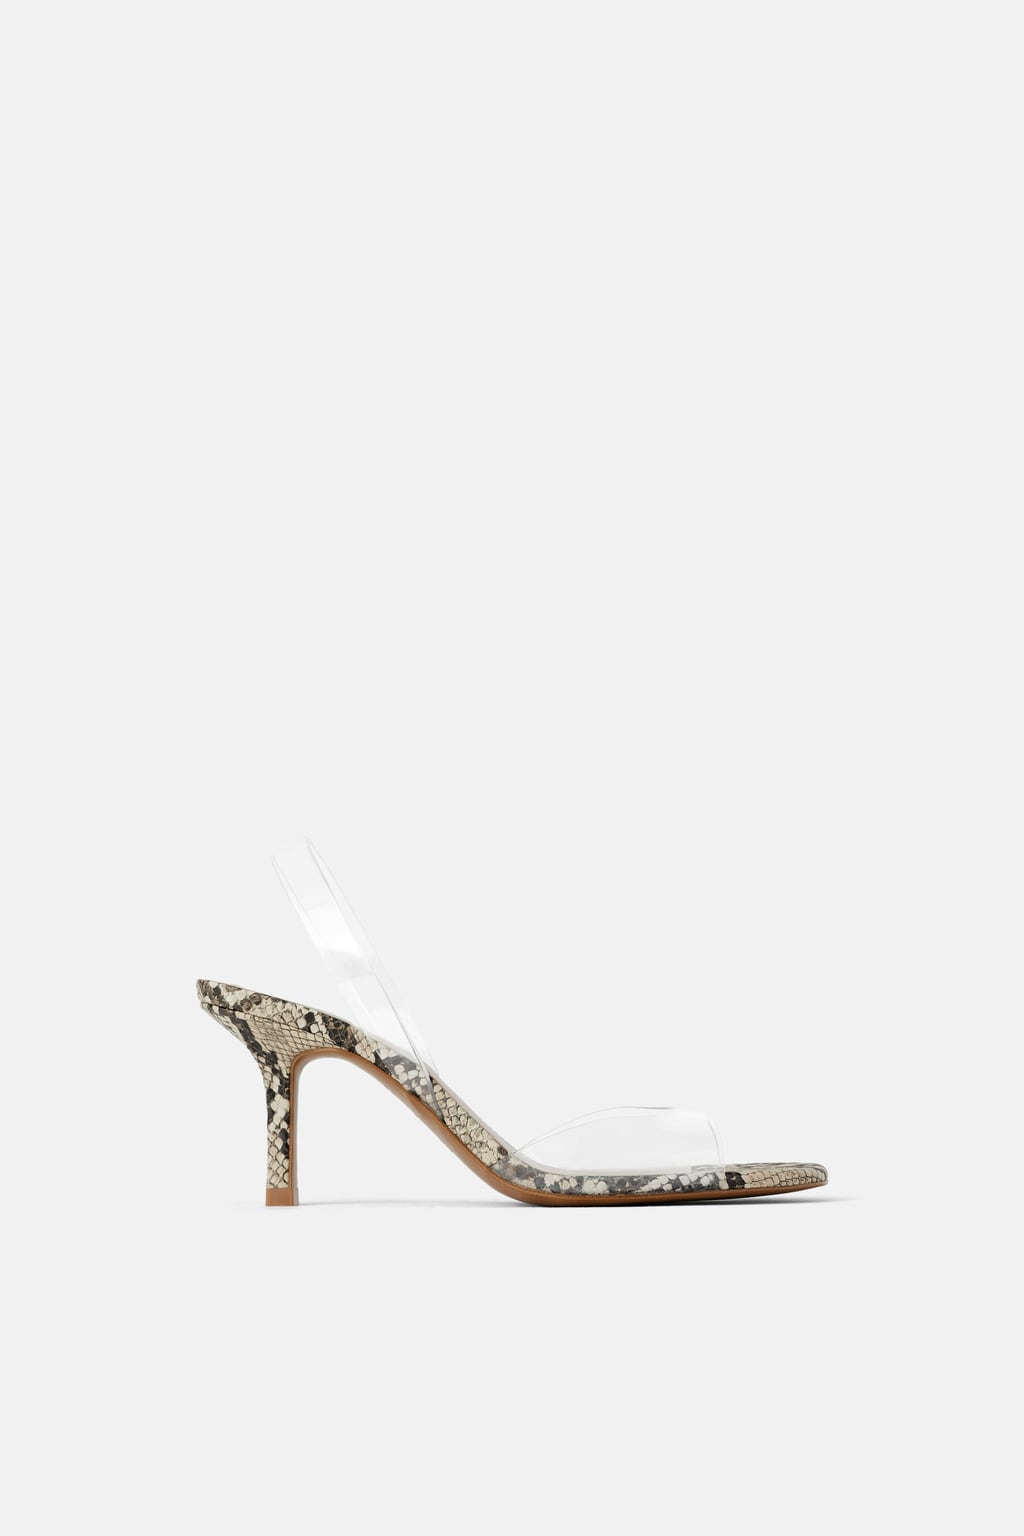 LAST]NWT Zara High Slim Stiletto Heel Animal Print Pointy Pumps | eBay